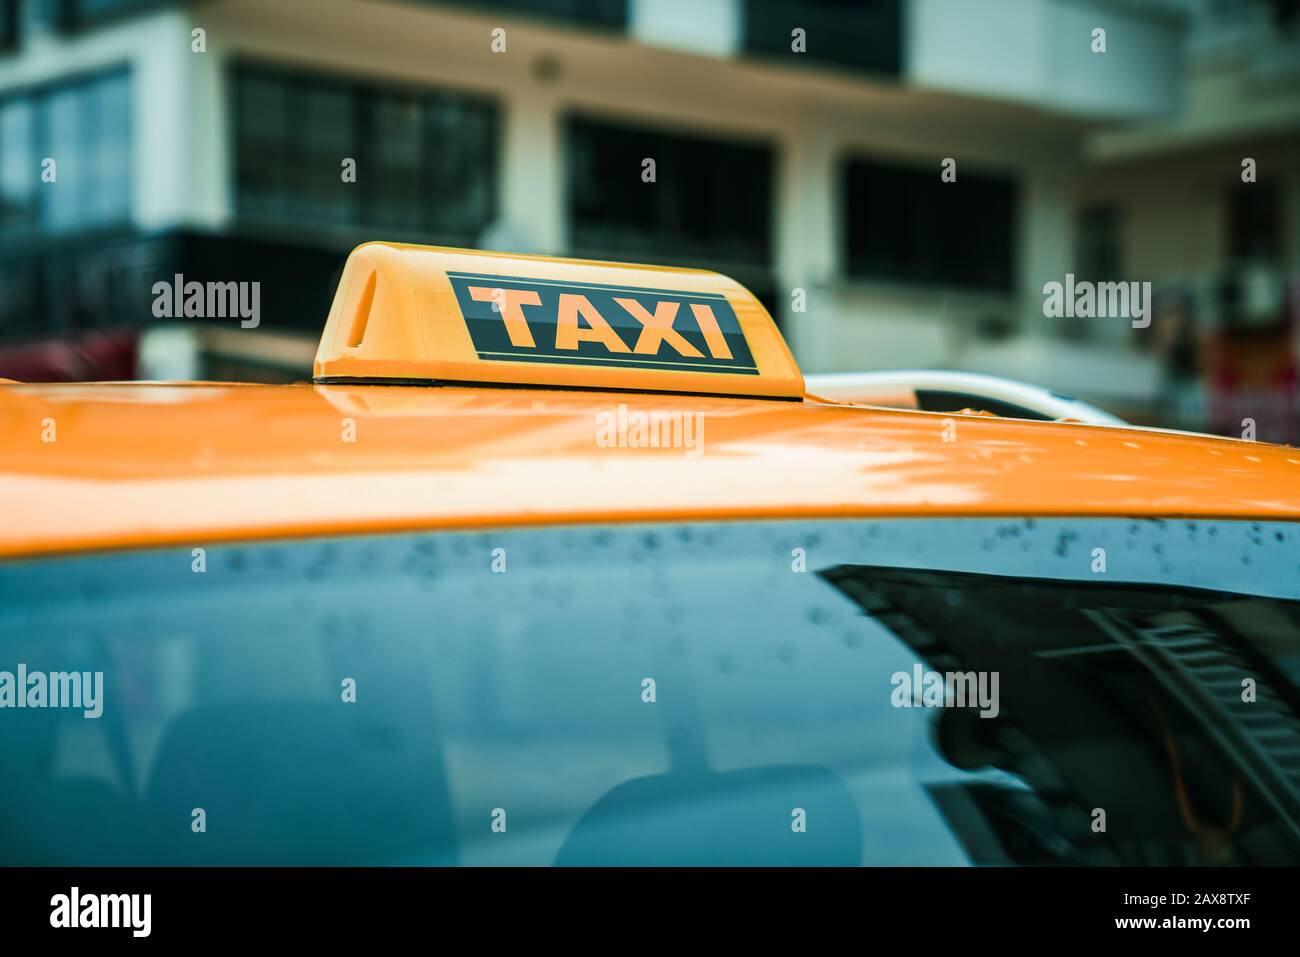 Panneau jaune de taxi sur le toit d'une voiture. Concept de transport et de voyage Banque D'Images